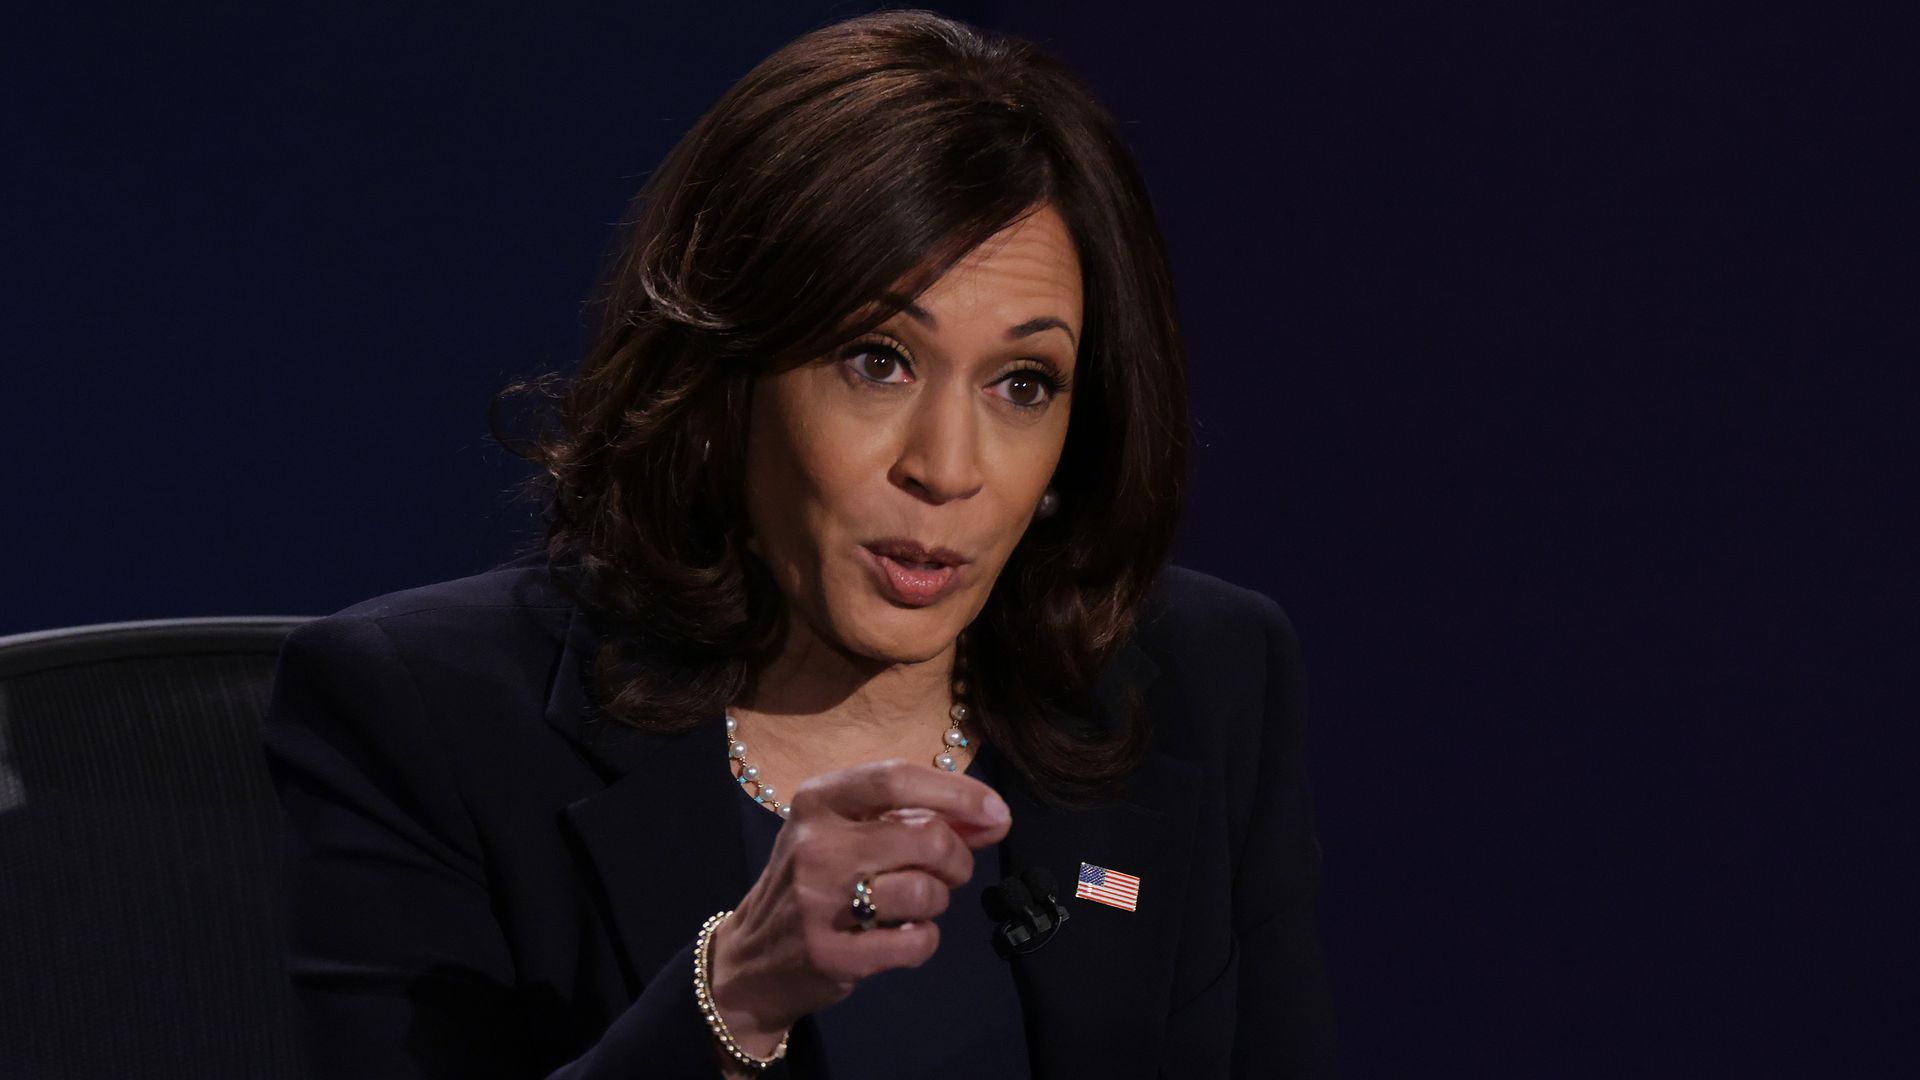 Photo of Kamala Harris gesturing during vice presidential debate